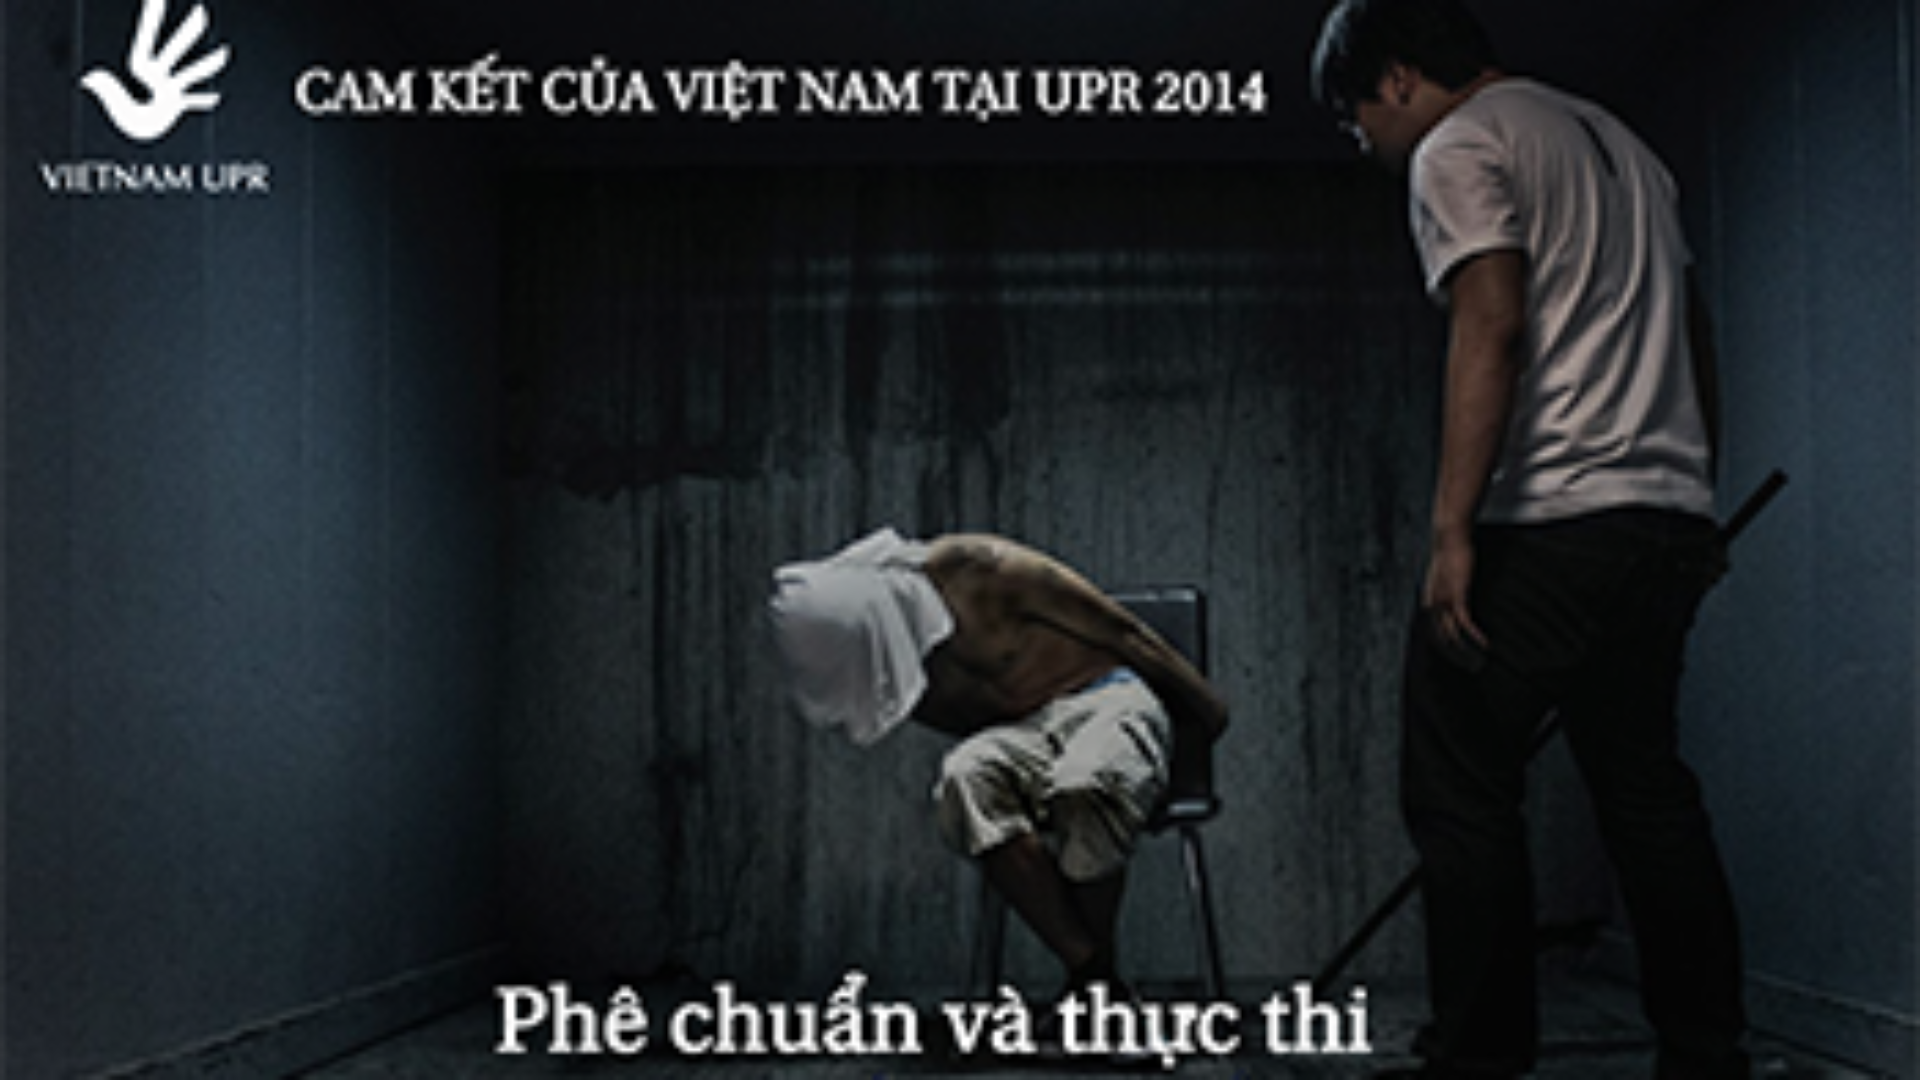 Bạn có biết: Việt Nam đã cam kết phê chuẩn và thực thi Công ước chống tra tấn tại UPR 2014?